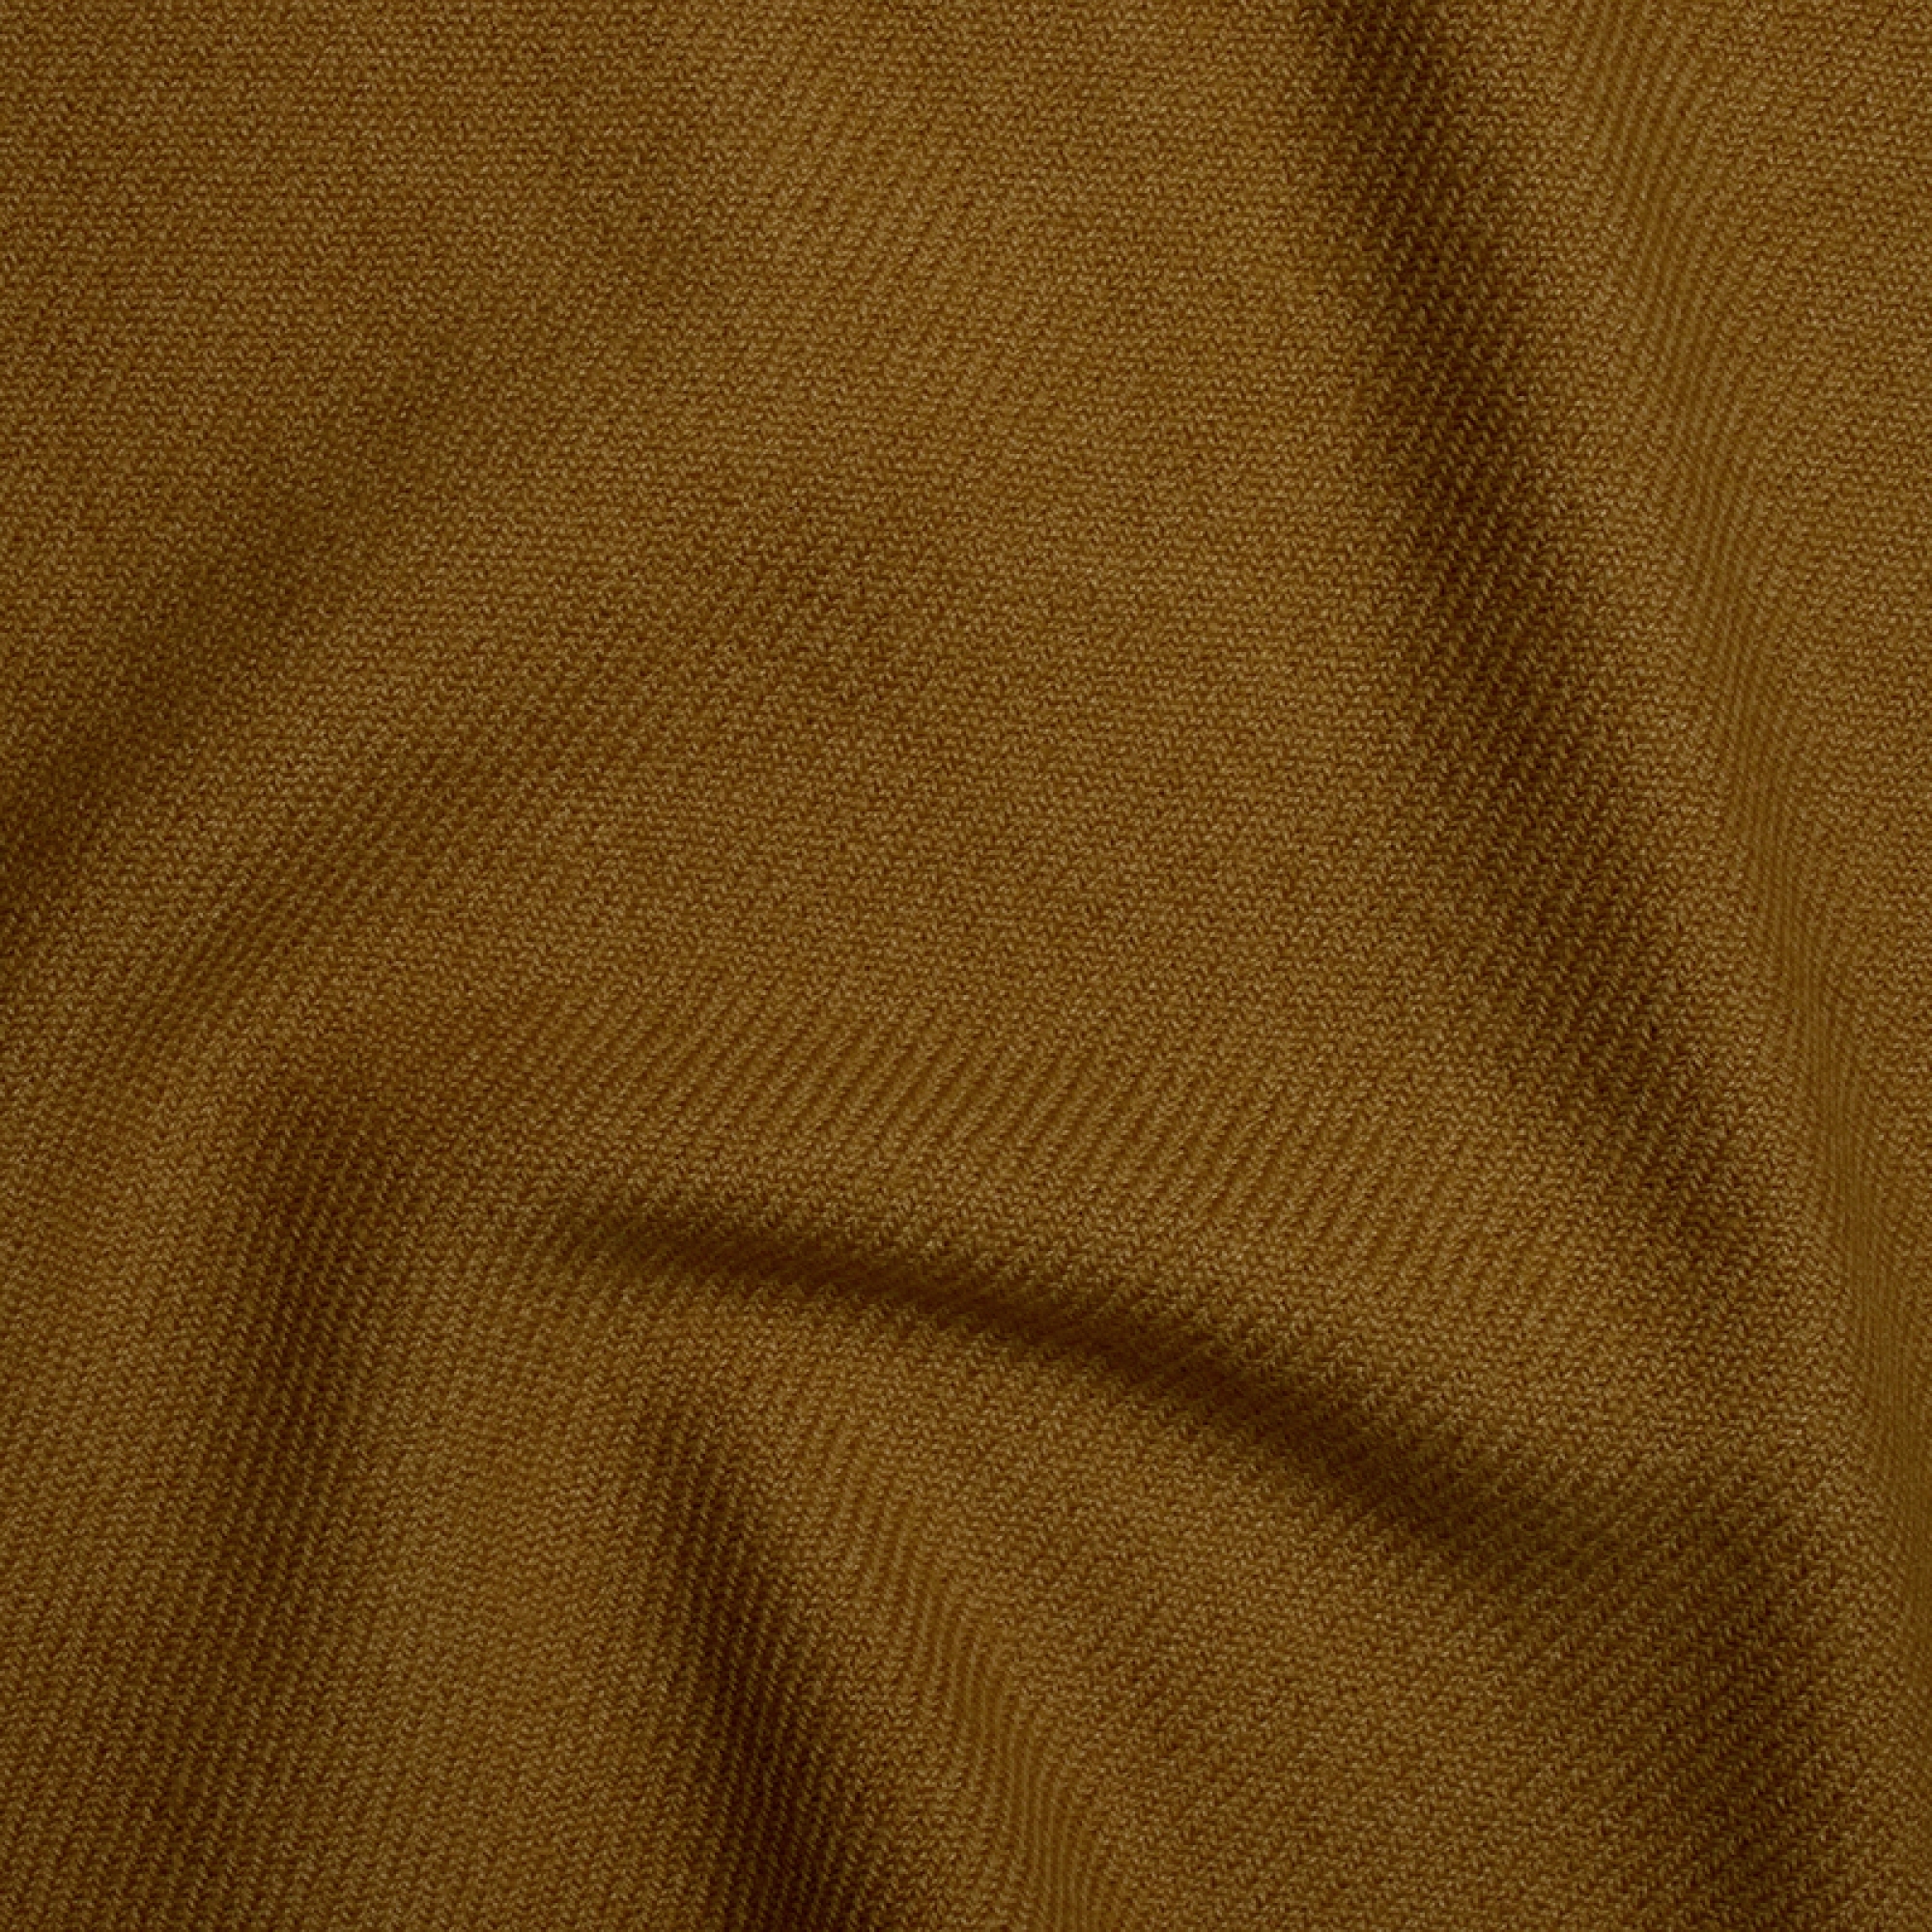 Cachemire accessoires couvertures plaids toodoo plain s 140 x 200 beurre de cacahuete 140 x 200 cm